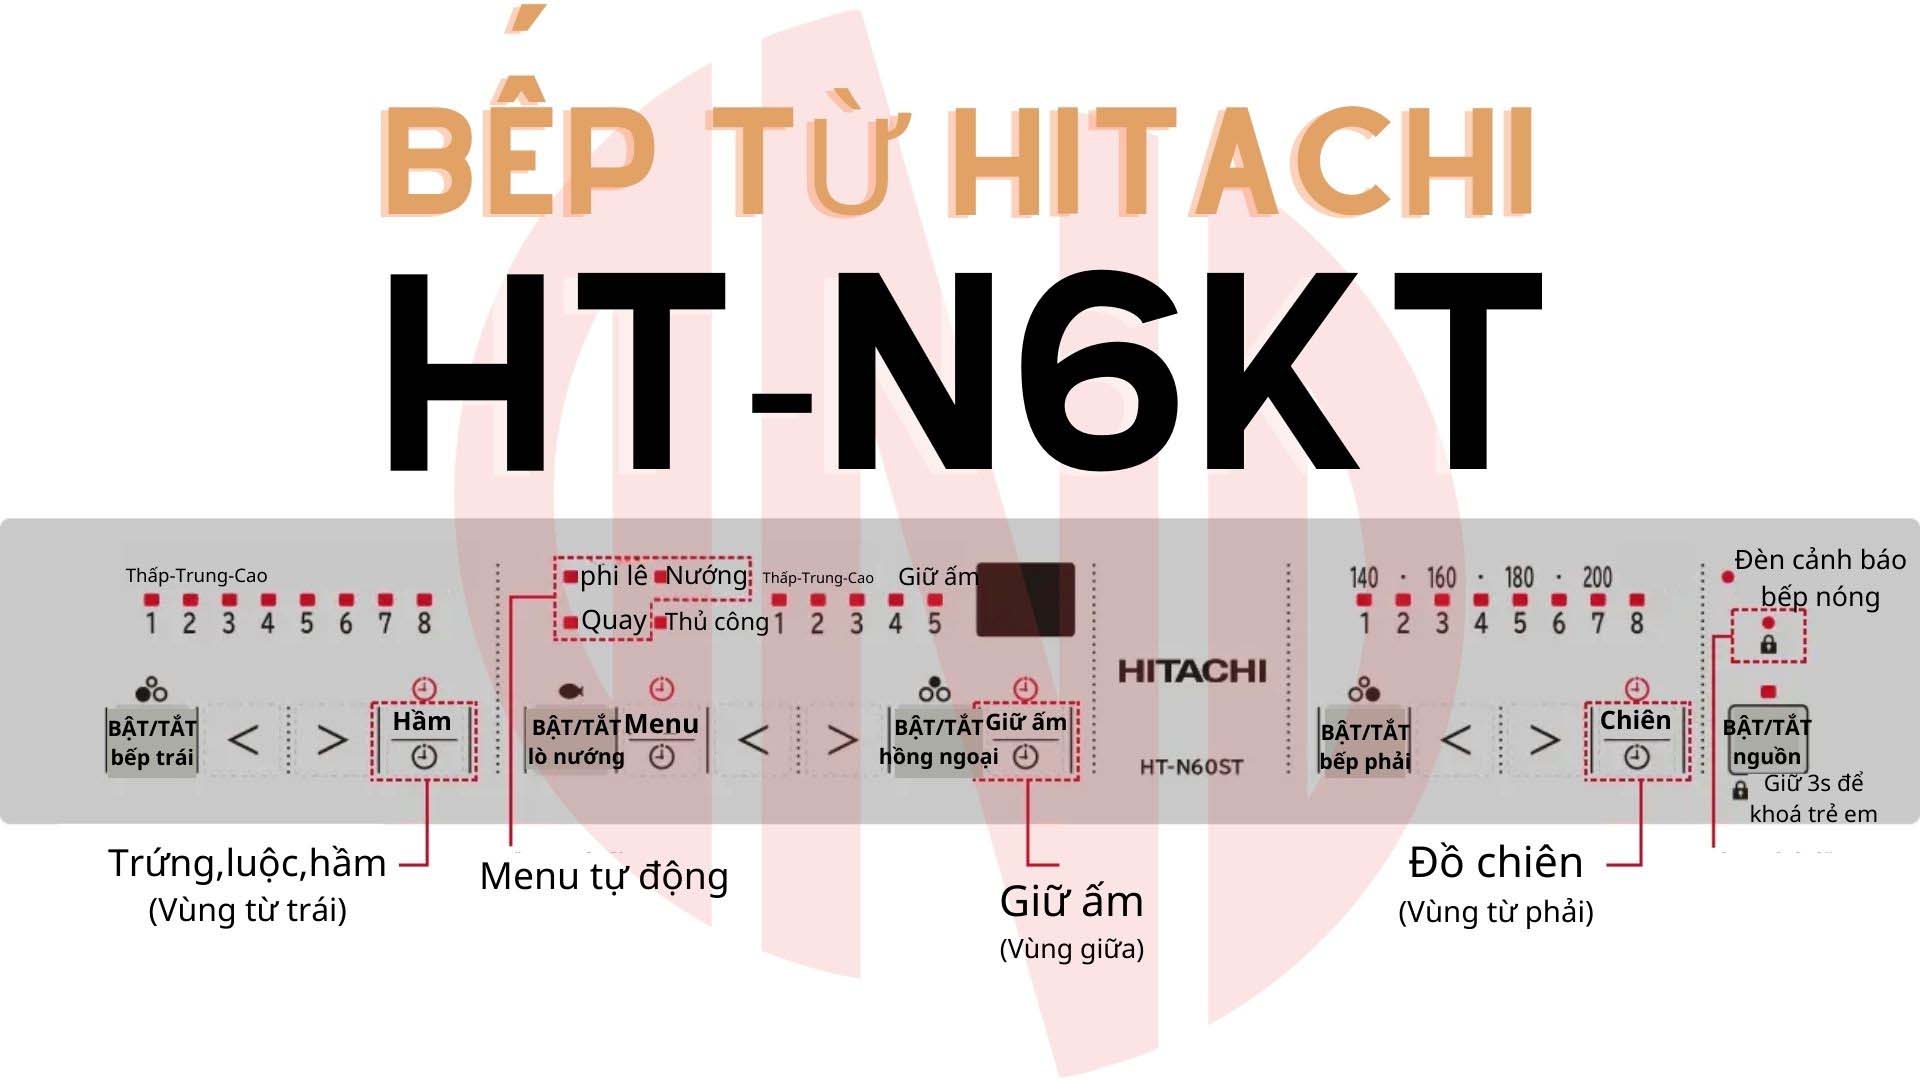 bep-tu-Hitachi-HT-N6KT